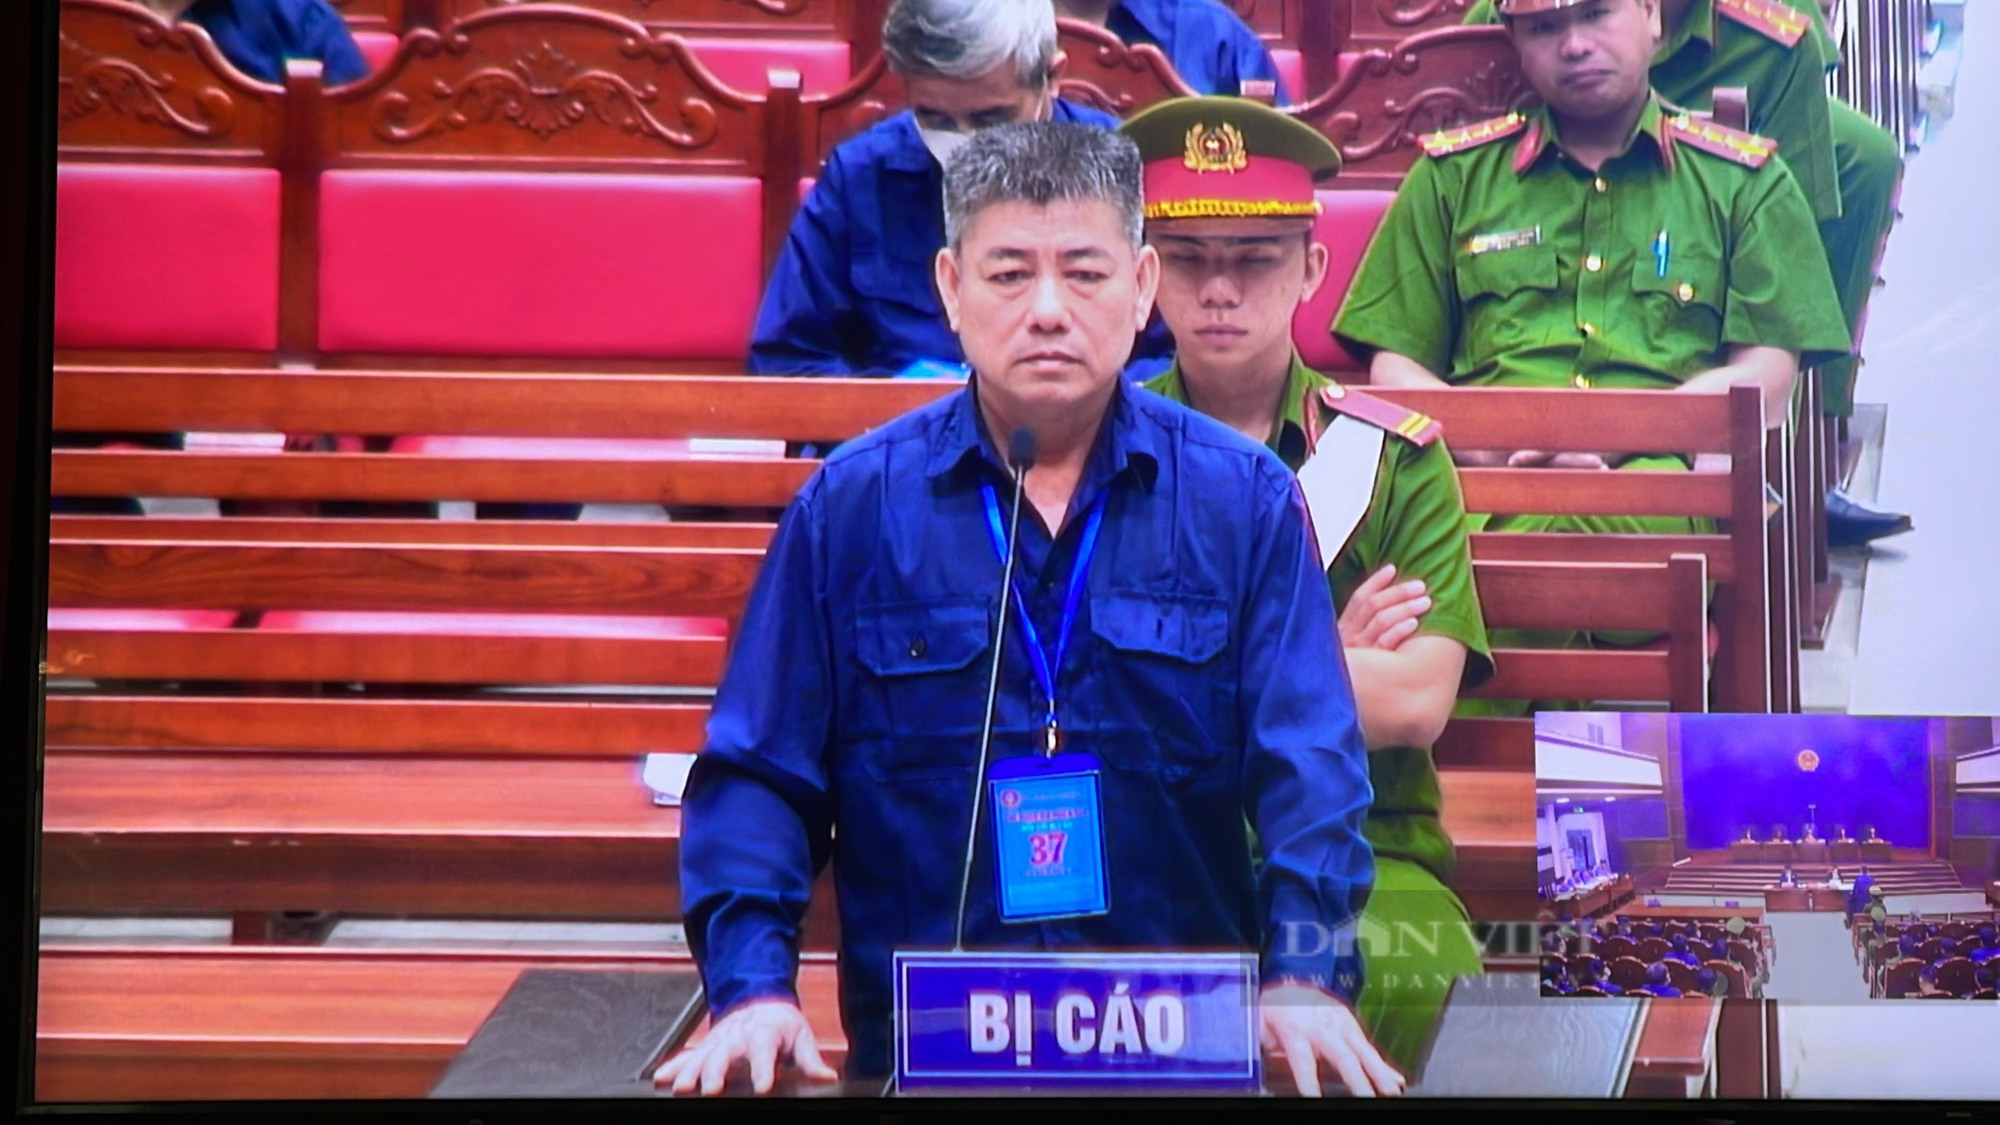 Đại án xăng lậu: VKSND Đồng Nai “khẳng định” đủ căn cứ xác định “cựu sếp đội 3” nhận hối lộ - Ảnh 2.